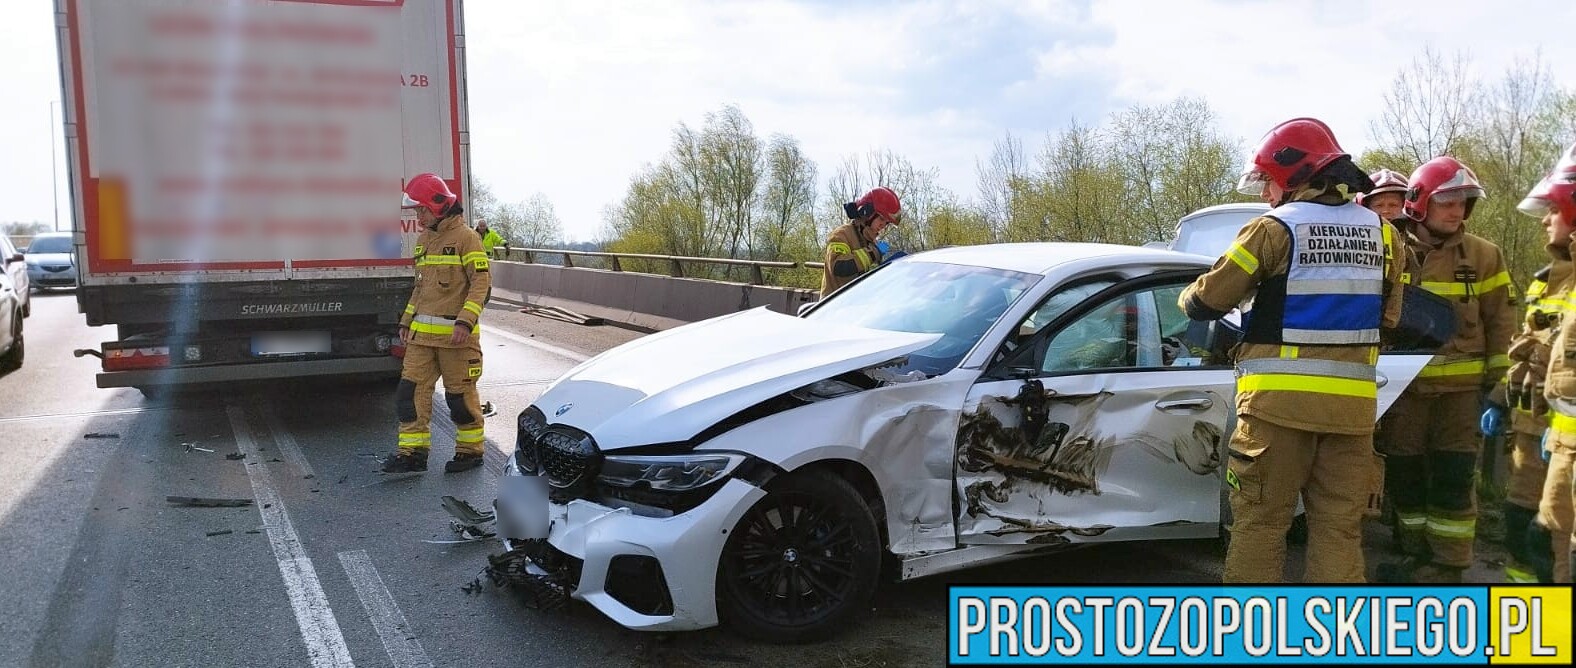 Wypadek na obwodnicy Opola. Doszło do zderzenia bmw z ciężarówką. Jedna osoba została poszkodowana.